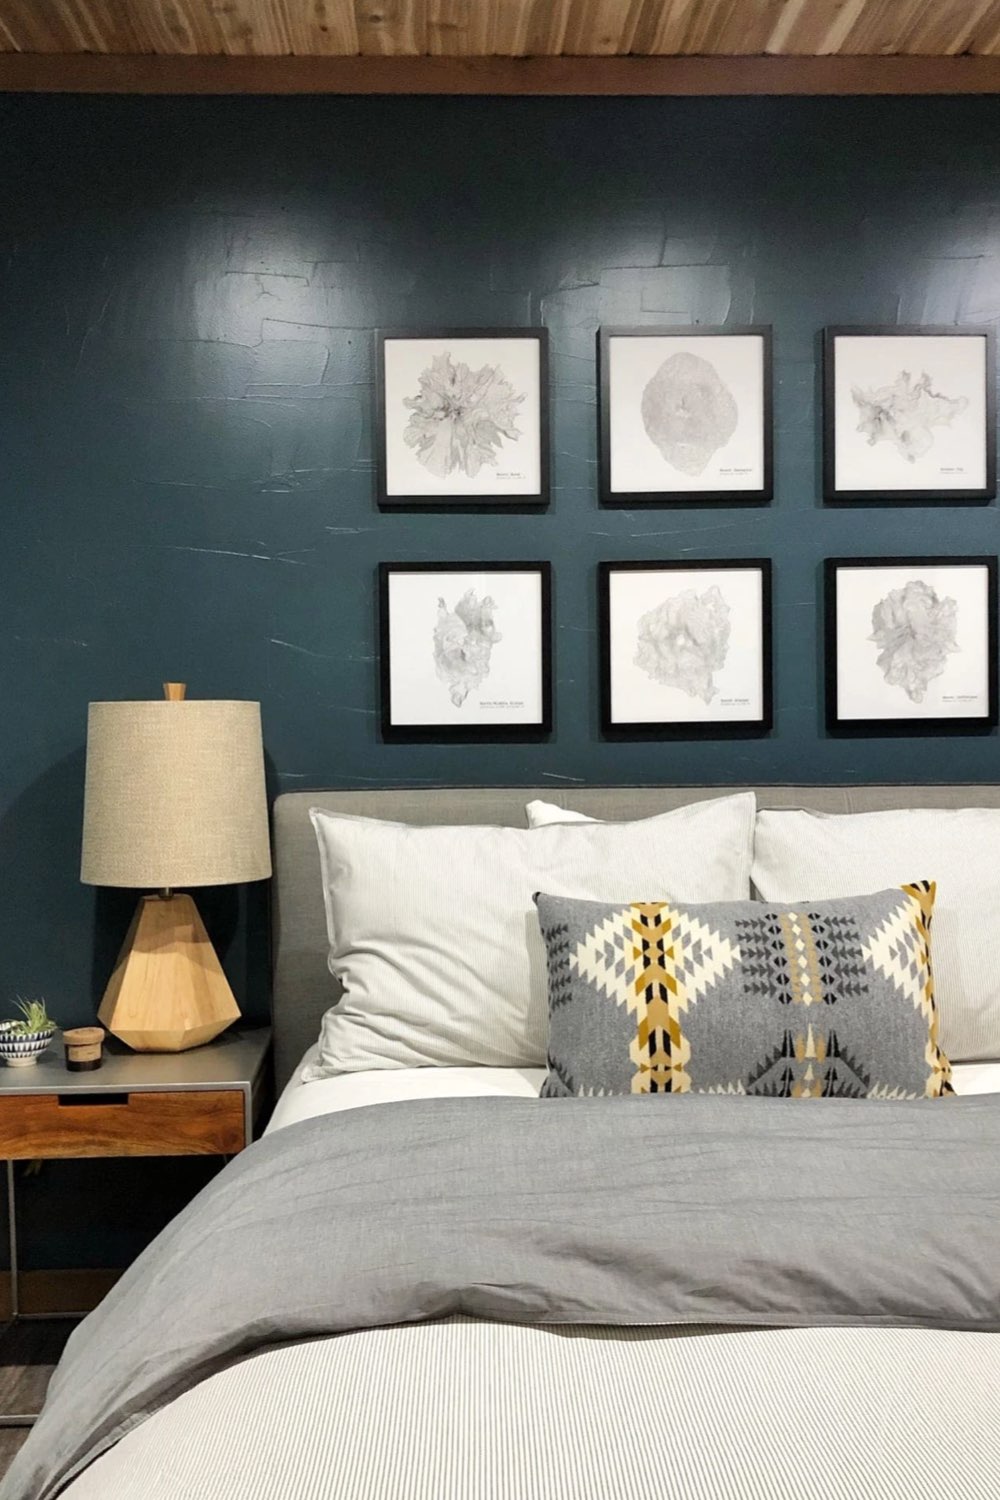 exemple chalet esprit scandinave moderne chambre d'ami mur accent peint en bleu décor mur cadres au dessus tête de lit